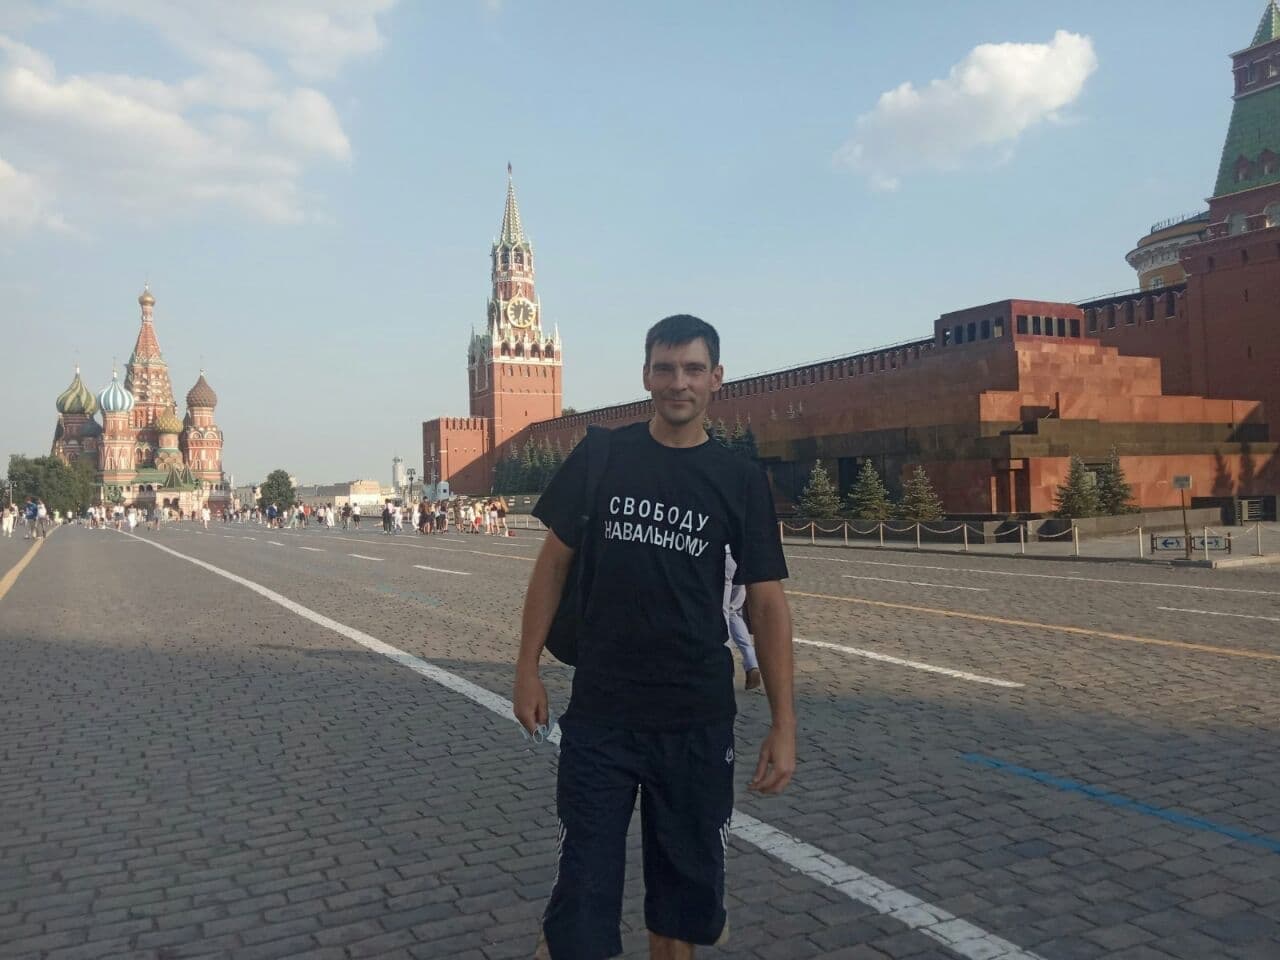 Активисту, пришедшему на Красную площадь в футболке «Свободу Навальному», дали 10 суток ареста